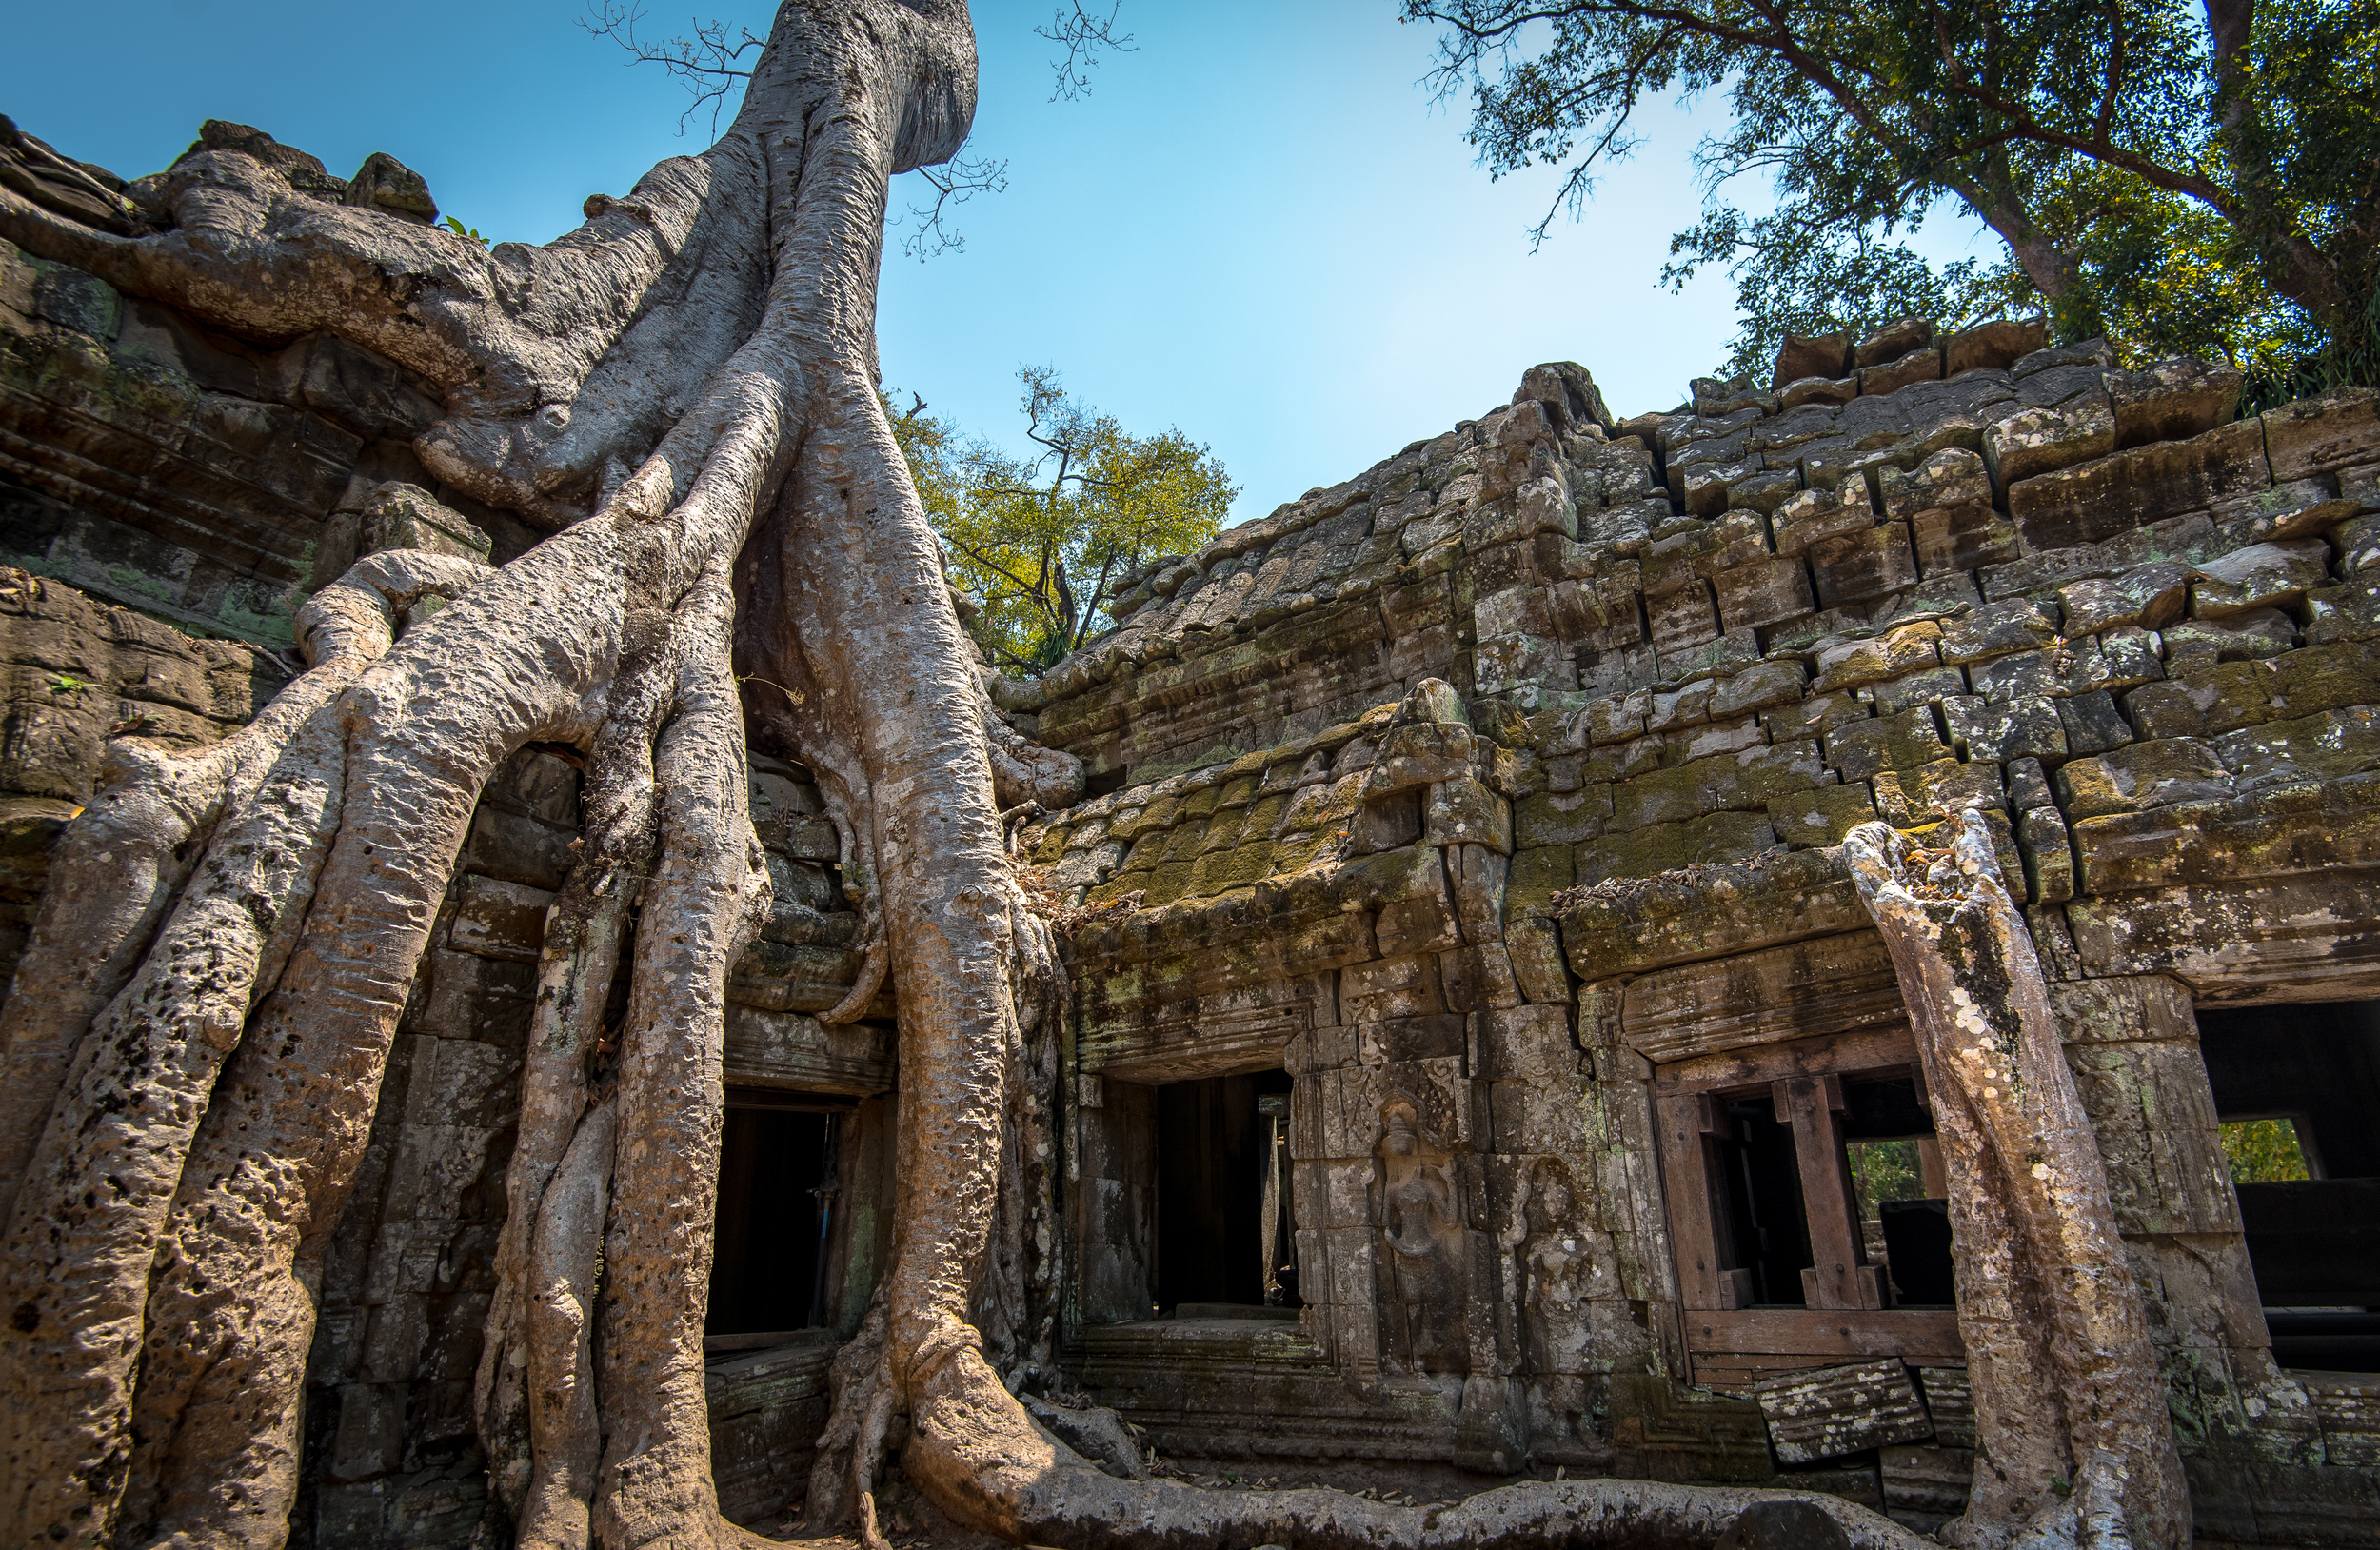 Ta Prohm Angkor Wat.jpg